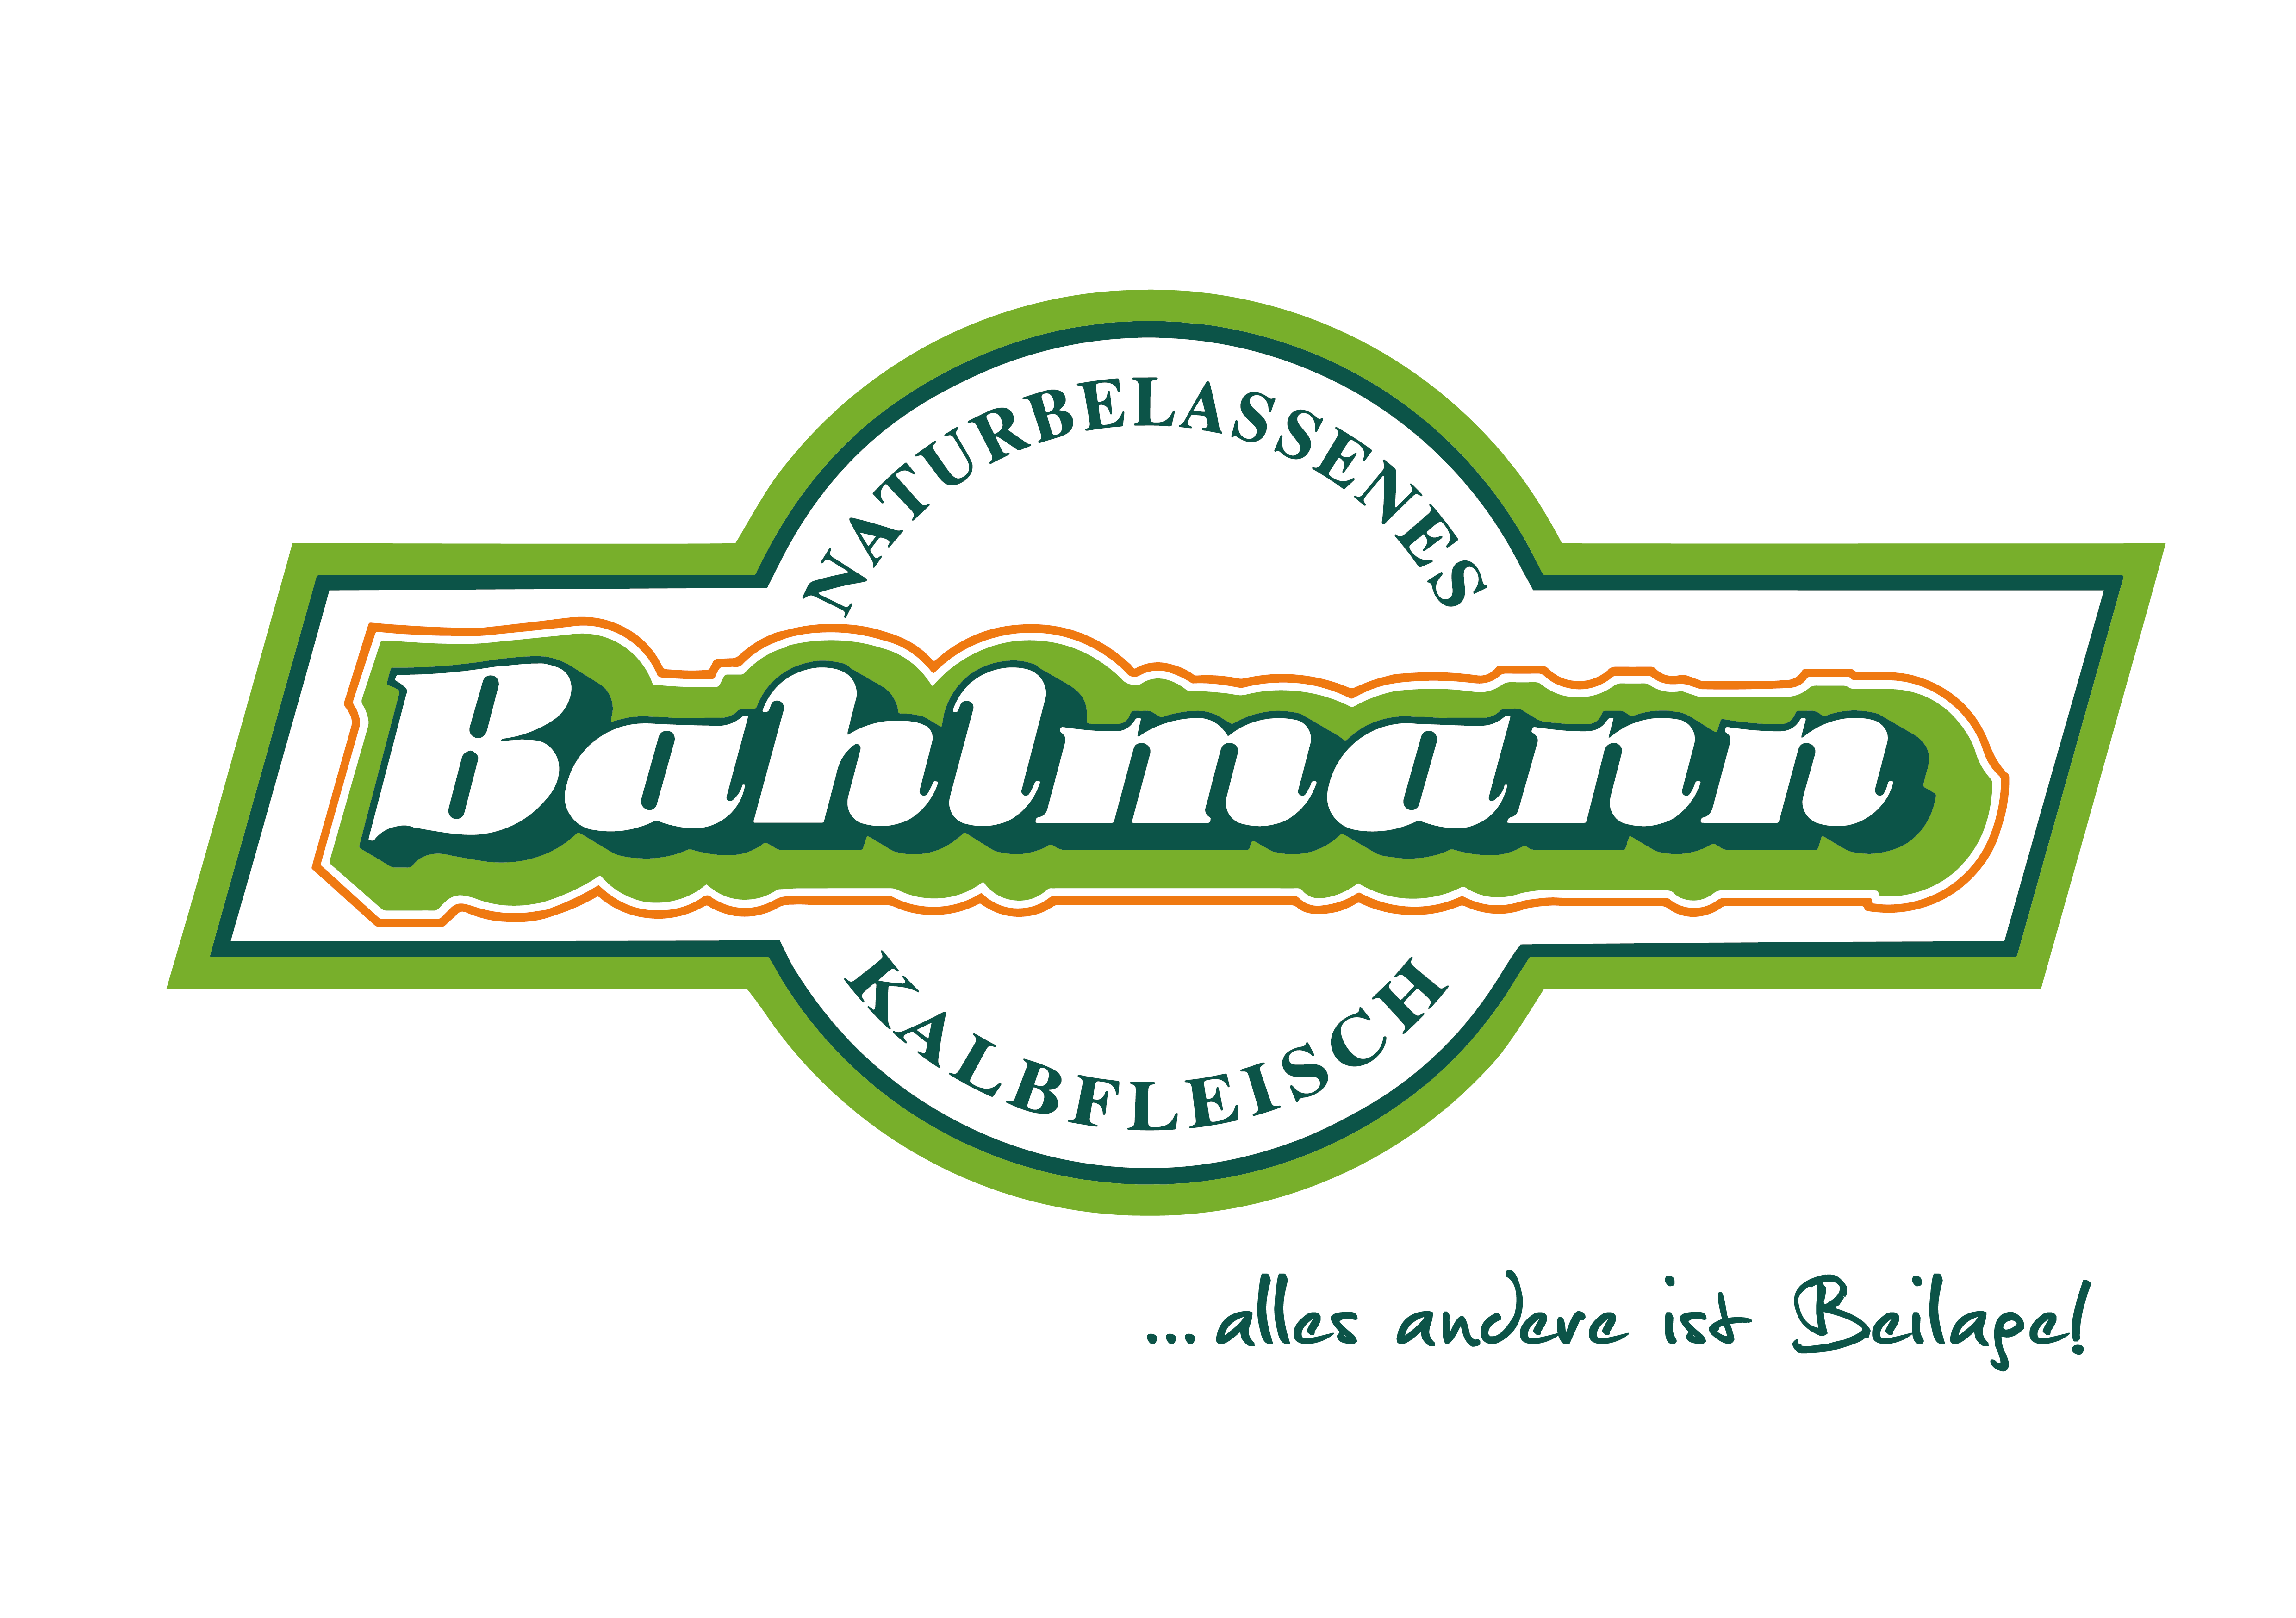 Bahlmann